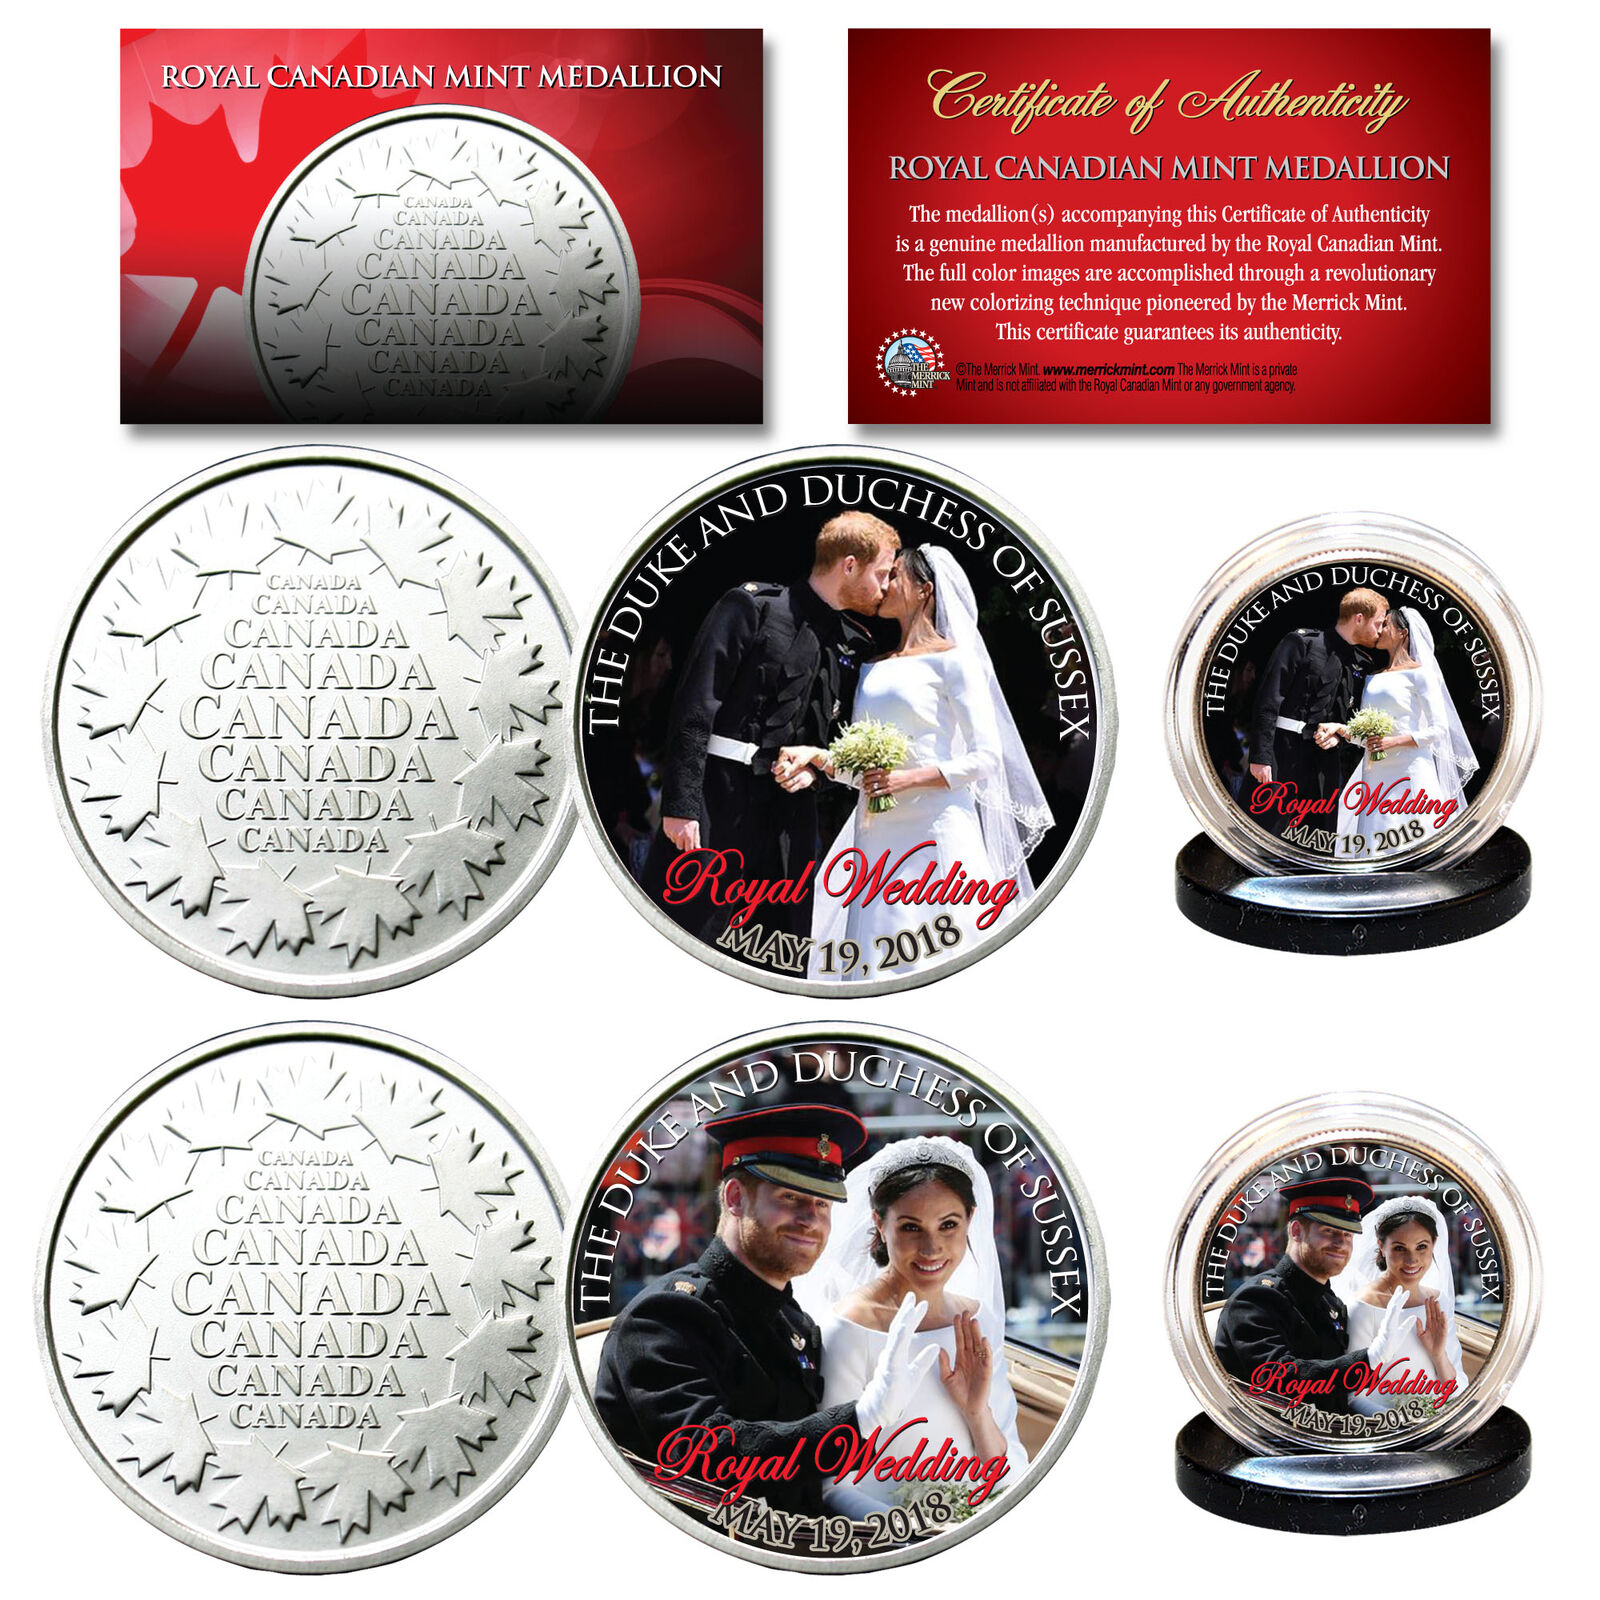 PRINCE HARRY & MEGHAN MARKLE Official Royal Wedding Photos RCM 2-Coin Set